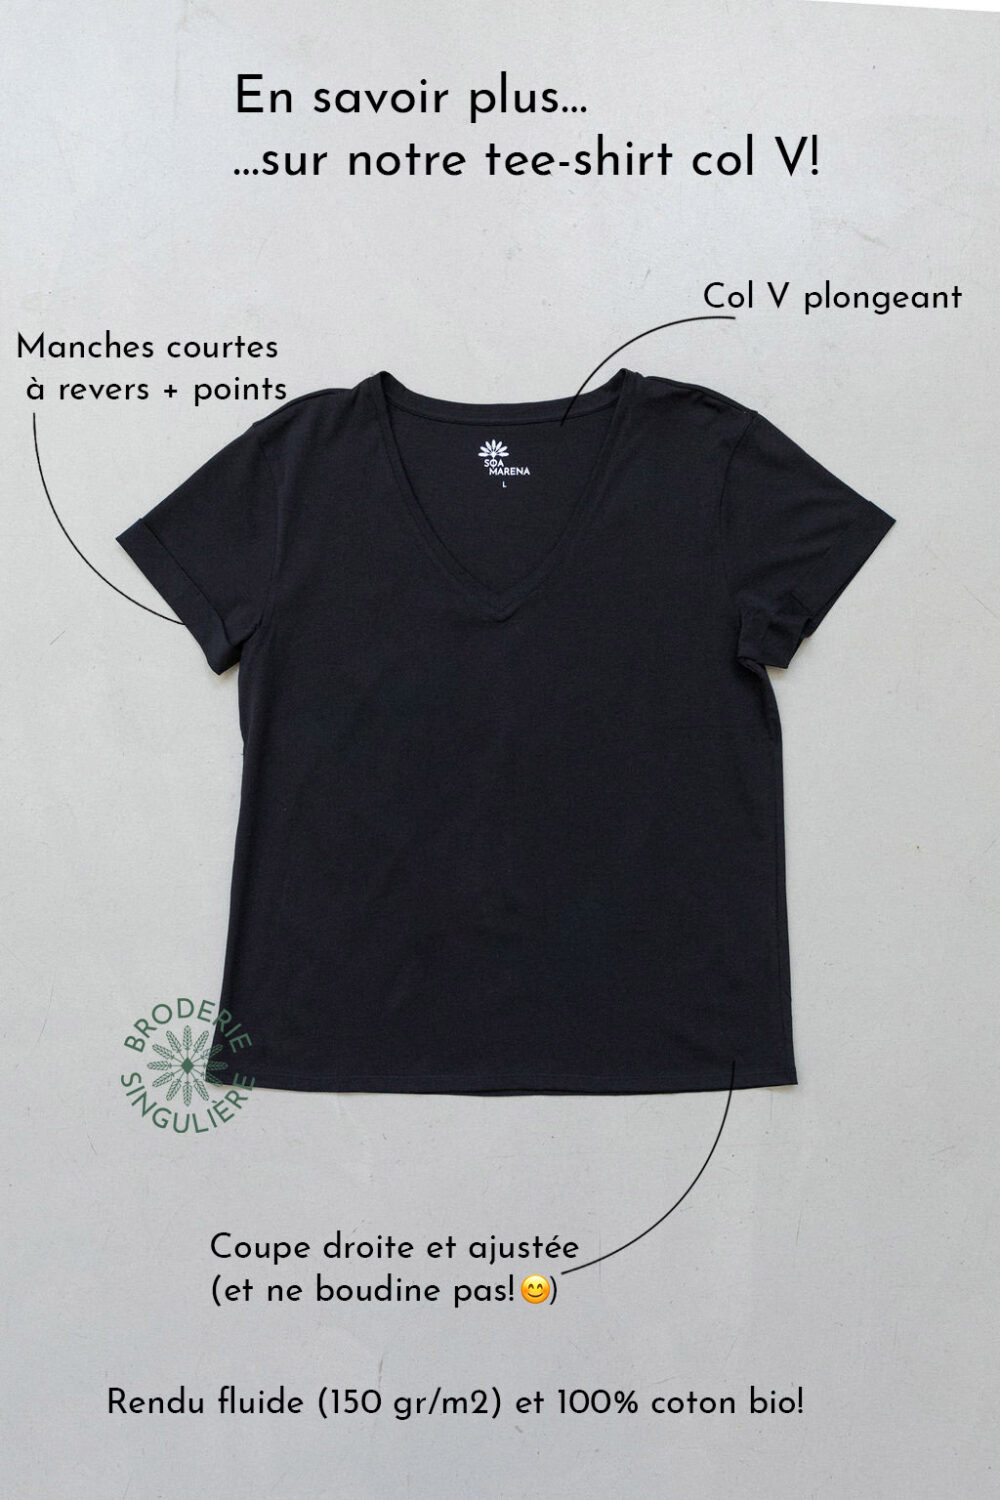 Descriptif tee-shirt noir col V 100% coton bio